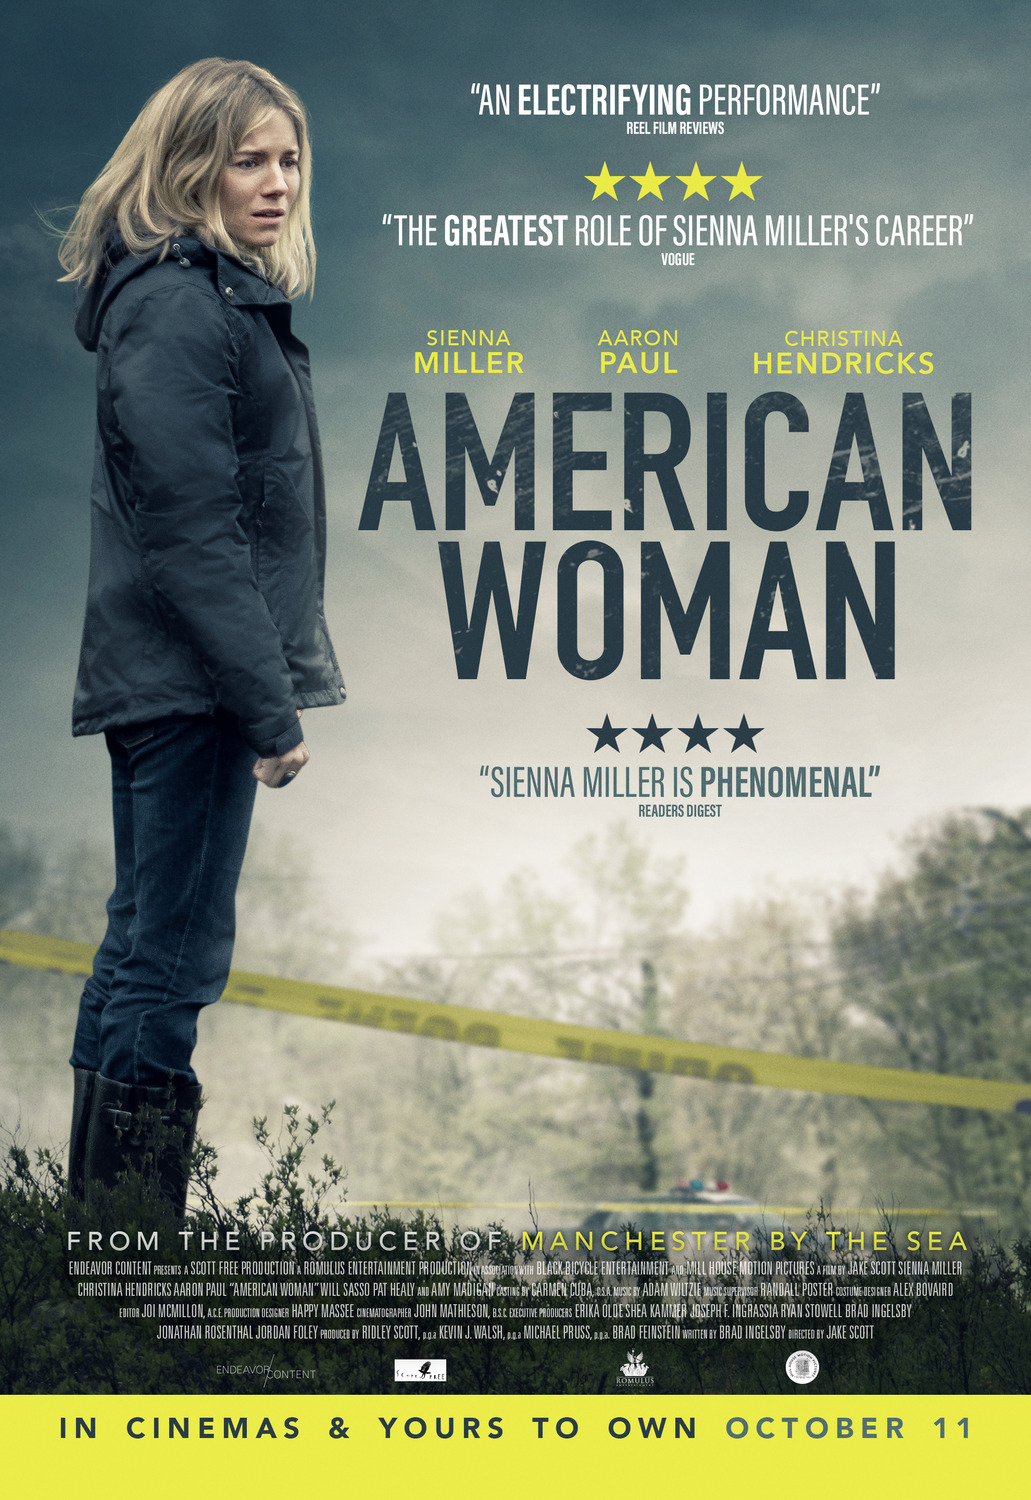 Résultat de recherche d'images pour "american woman film"